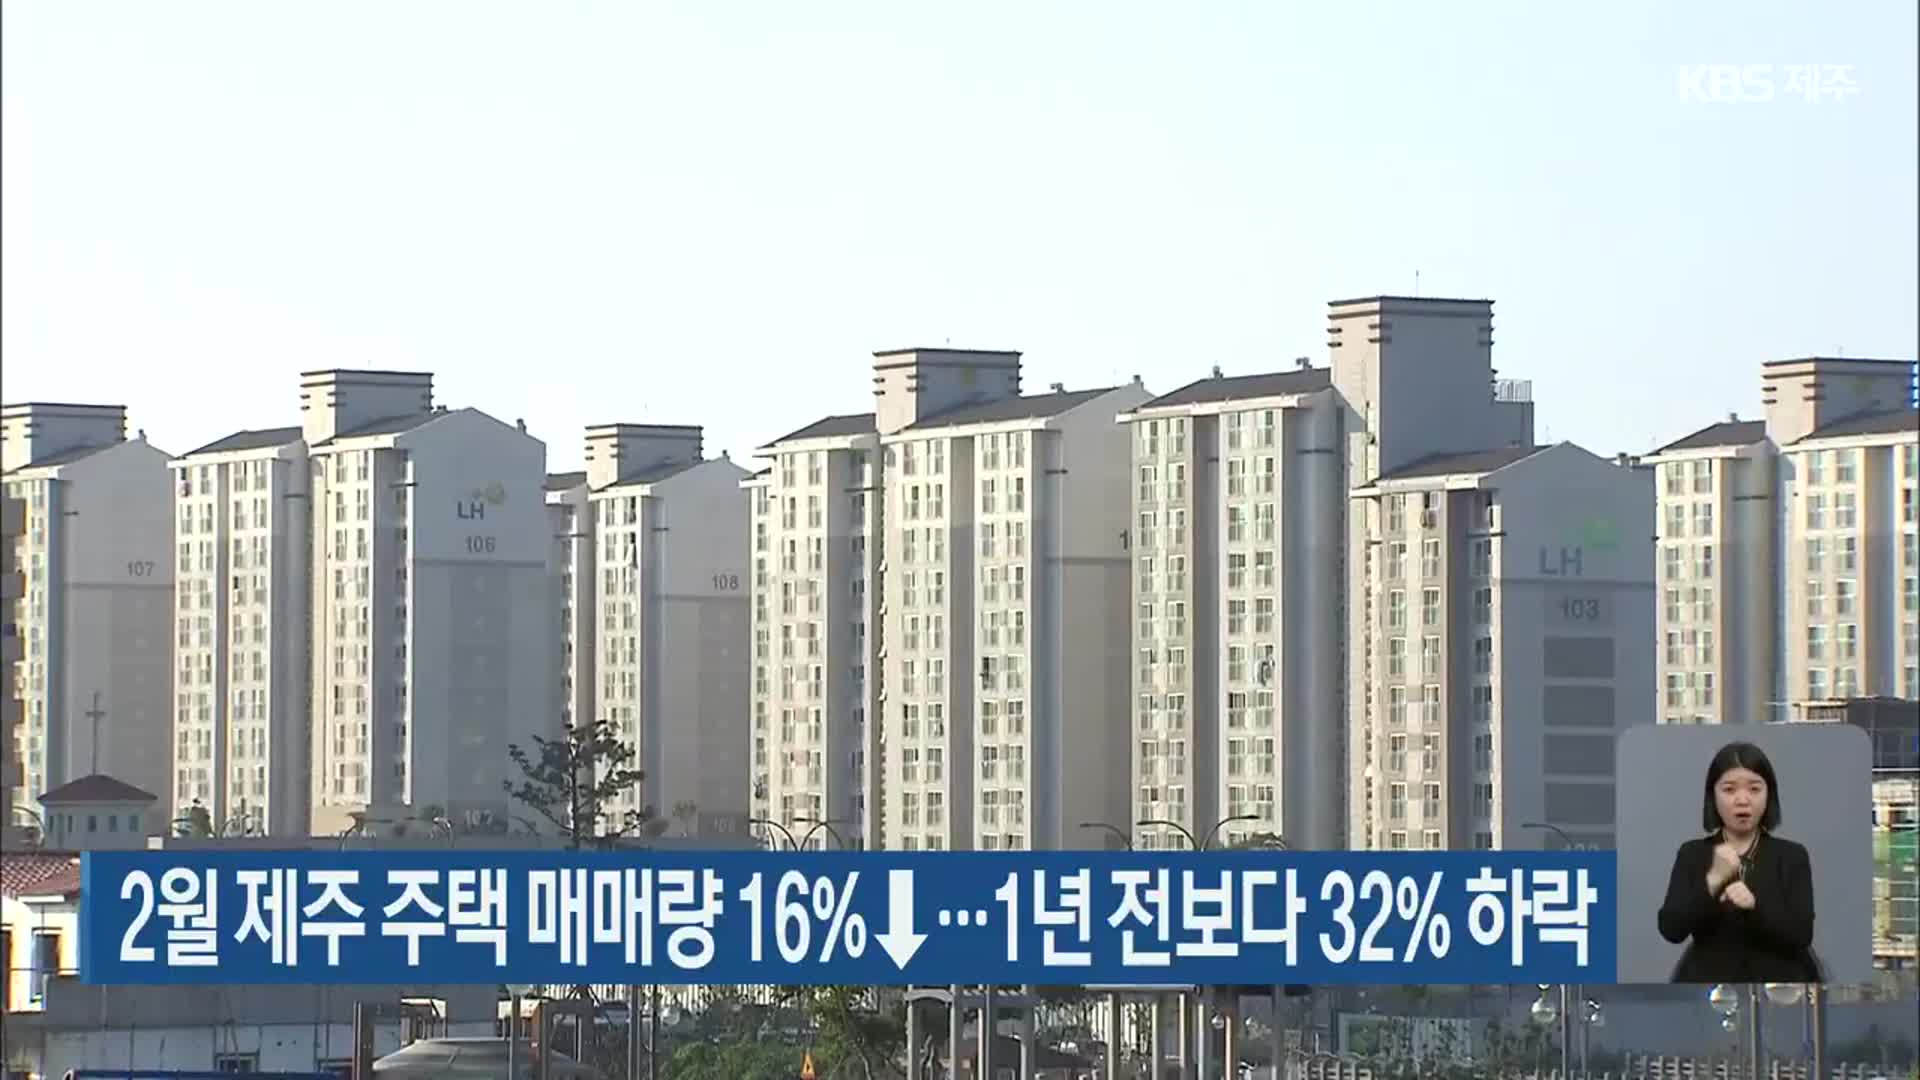 2월 제주 주택 매매량 16%↓…1년 전보다 32% 하락